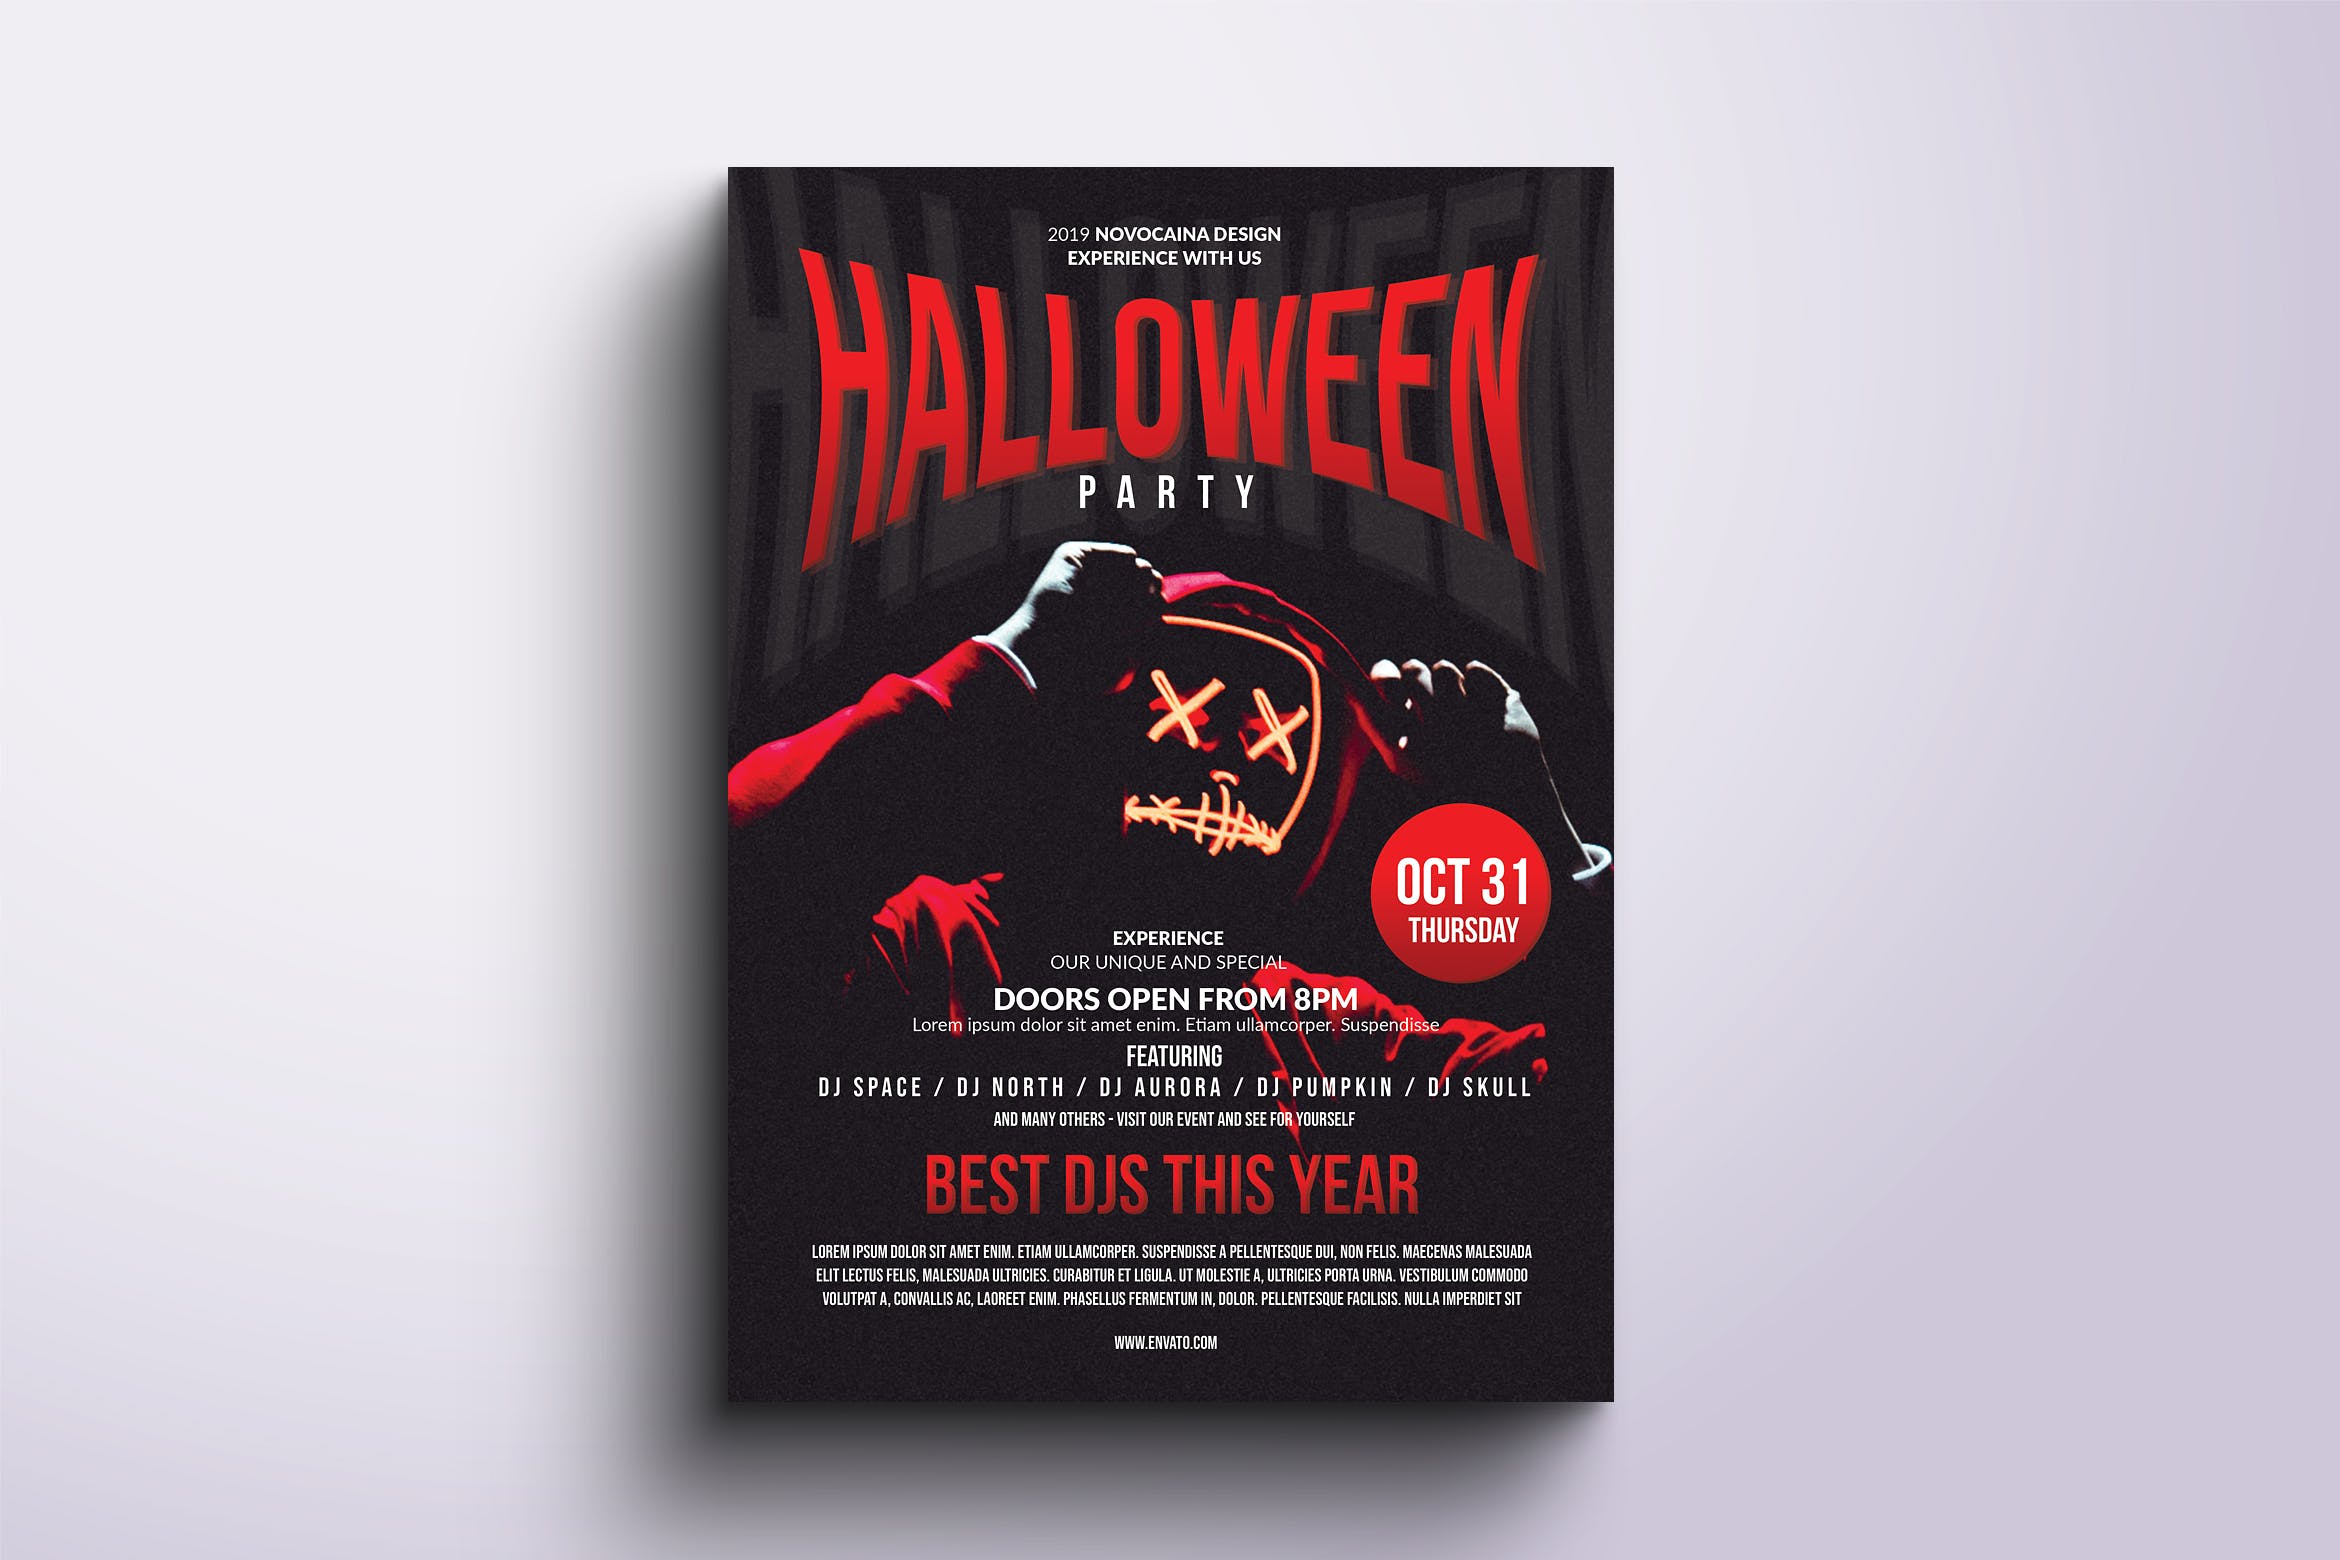 万圣节主题派对活动宣传海报传单设计模板v4 Halloween Party Poster & Flyer v4插图